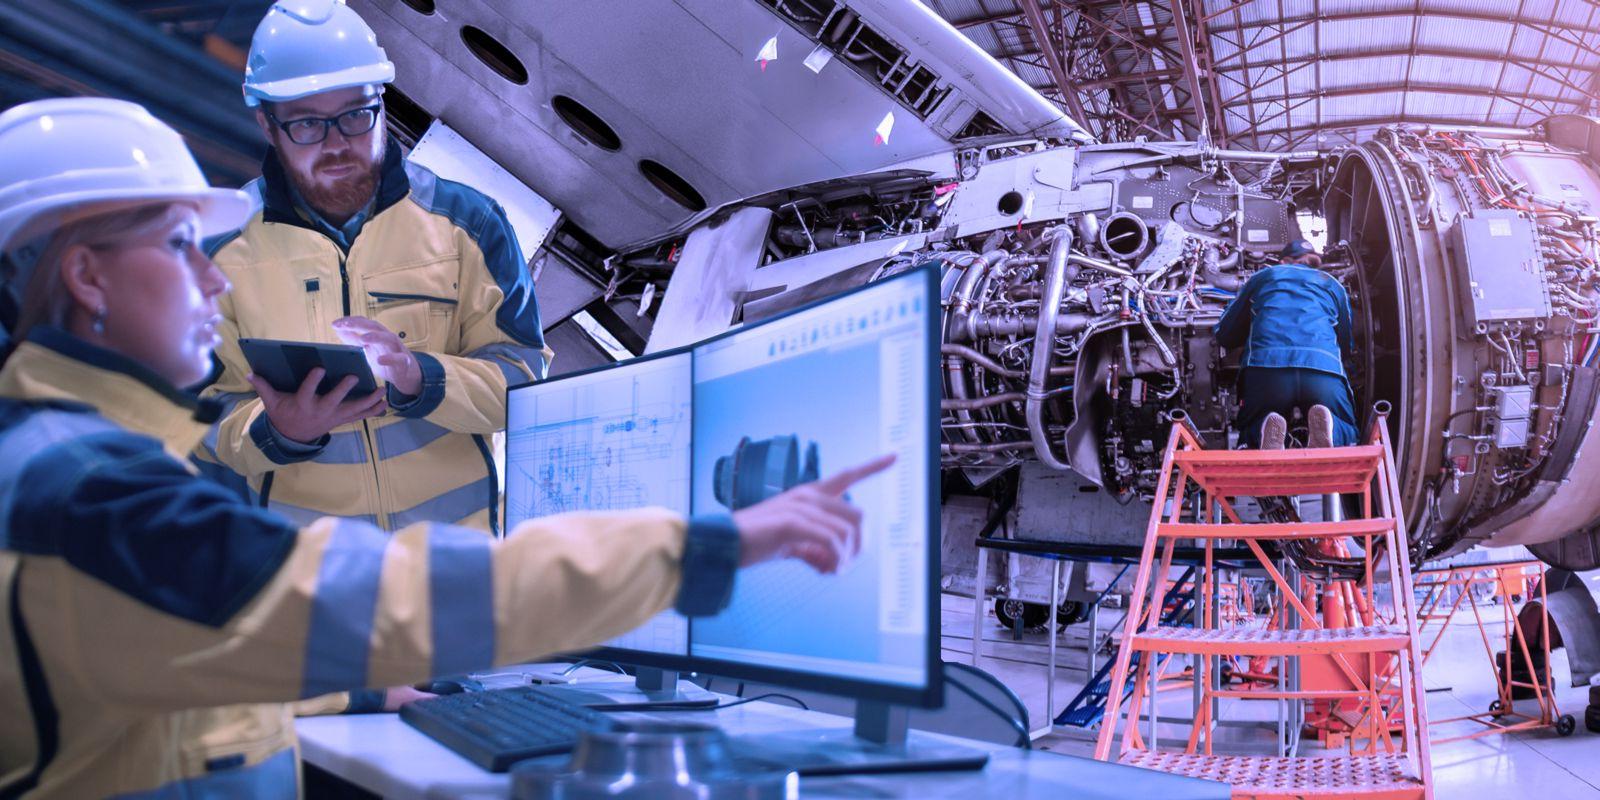 一个机械师跪在一个橙色的安全梯上修理飞机引擎. 一男一女工程师身穿黄黑夹克，头戴安全帽，在电脑显示器和平板电脑前研究计划.